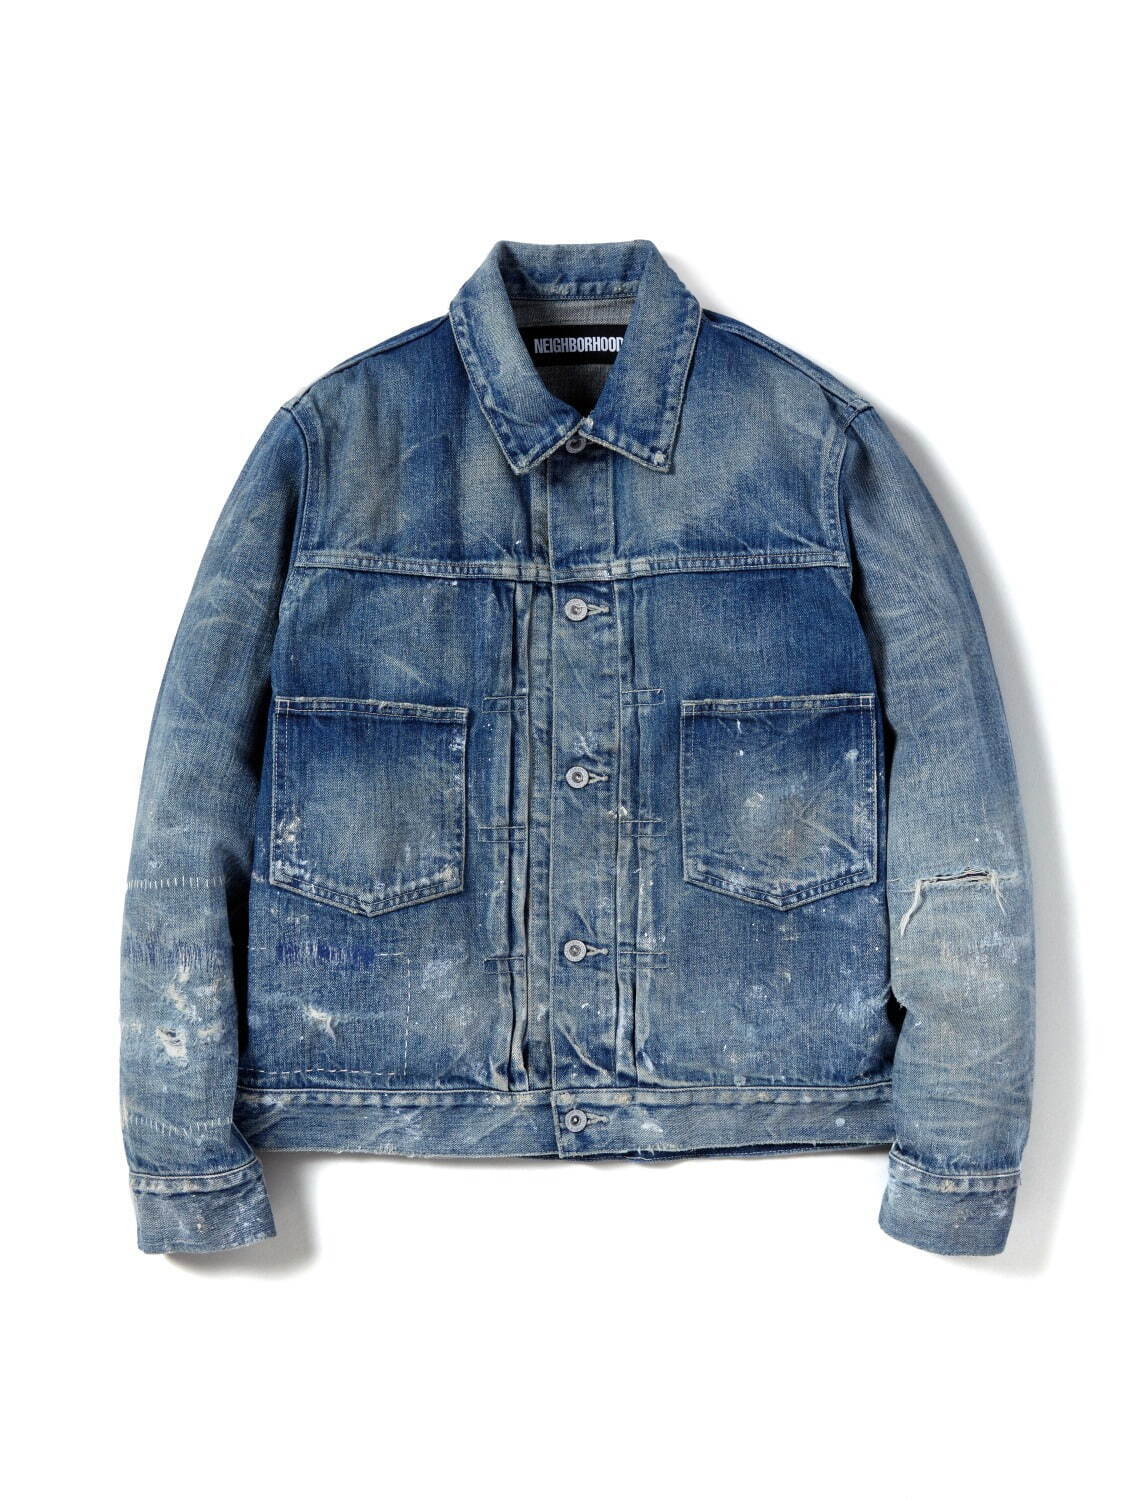 メンズのおすすめジャケット[21秋冬]人気ブランドのデニムジャケット